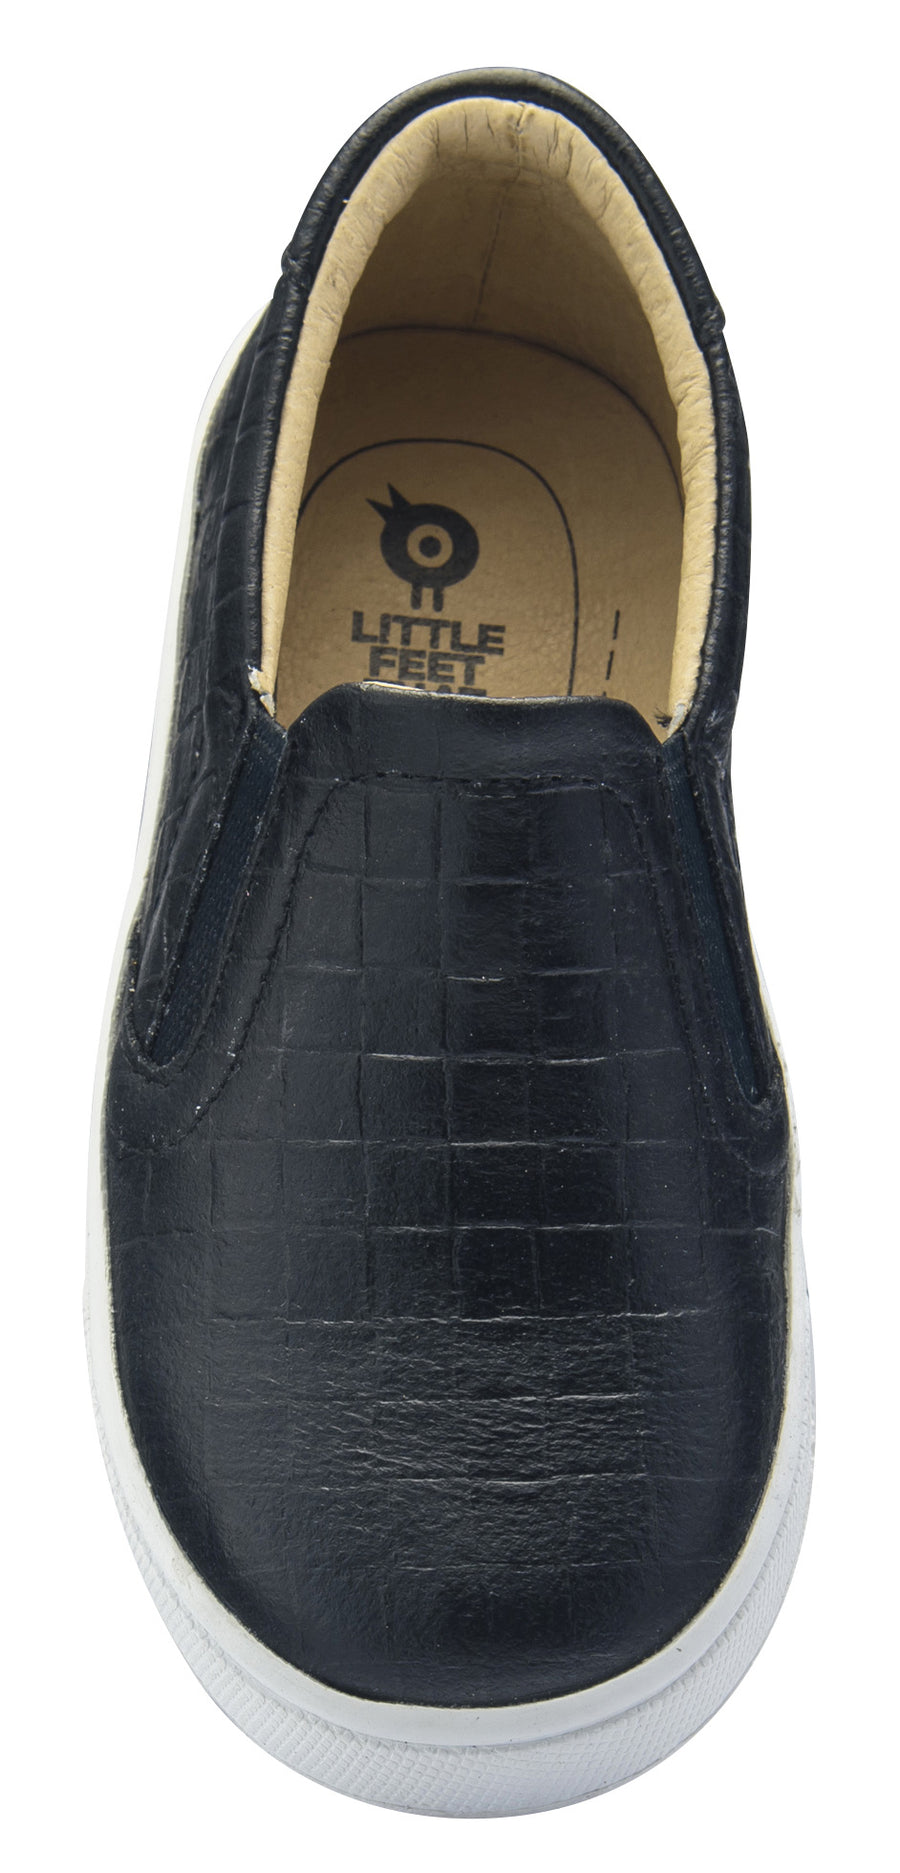 Old Soles Dressy Hoff Leather Sneakers, Black Weave